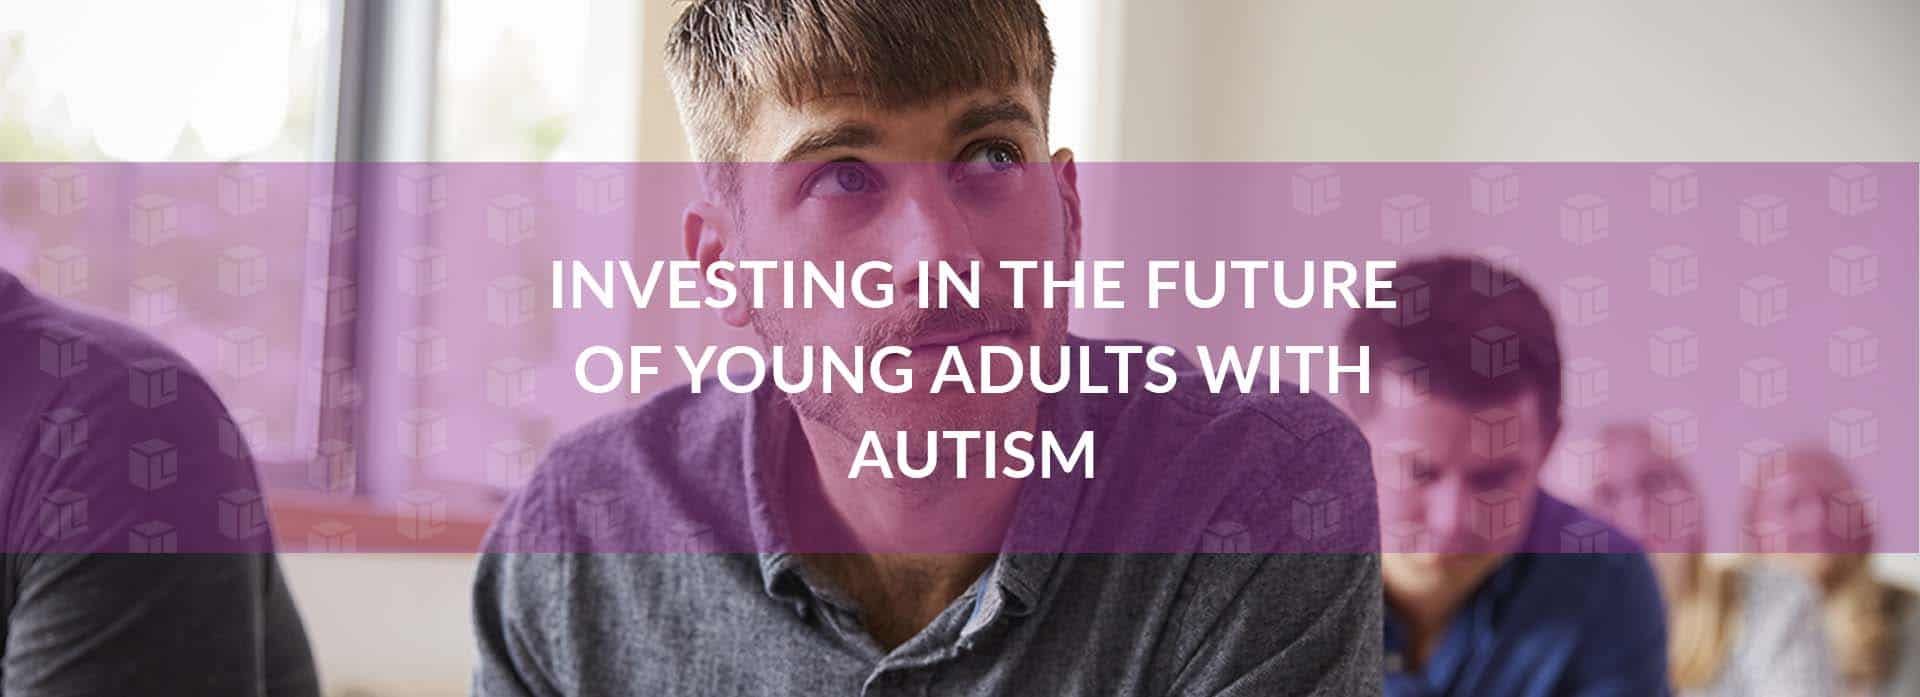 Young adults with autism Young adults with autism Young adults with autism Young adults with autism